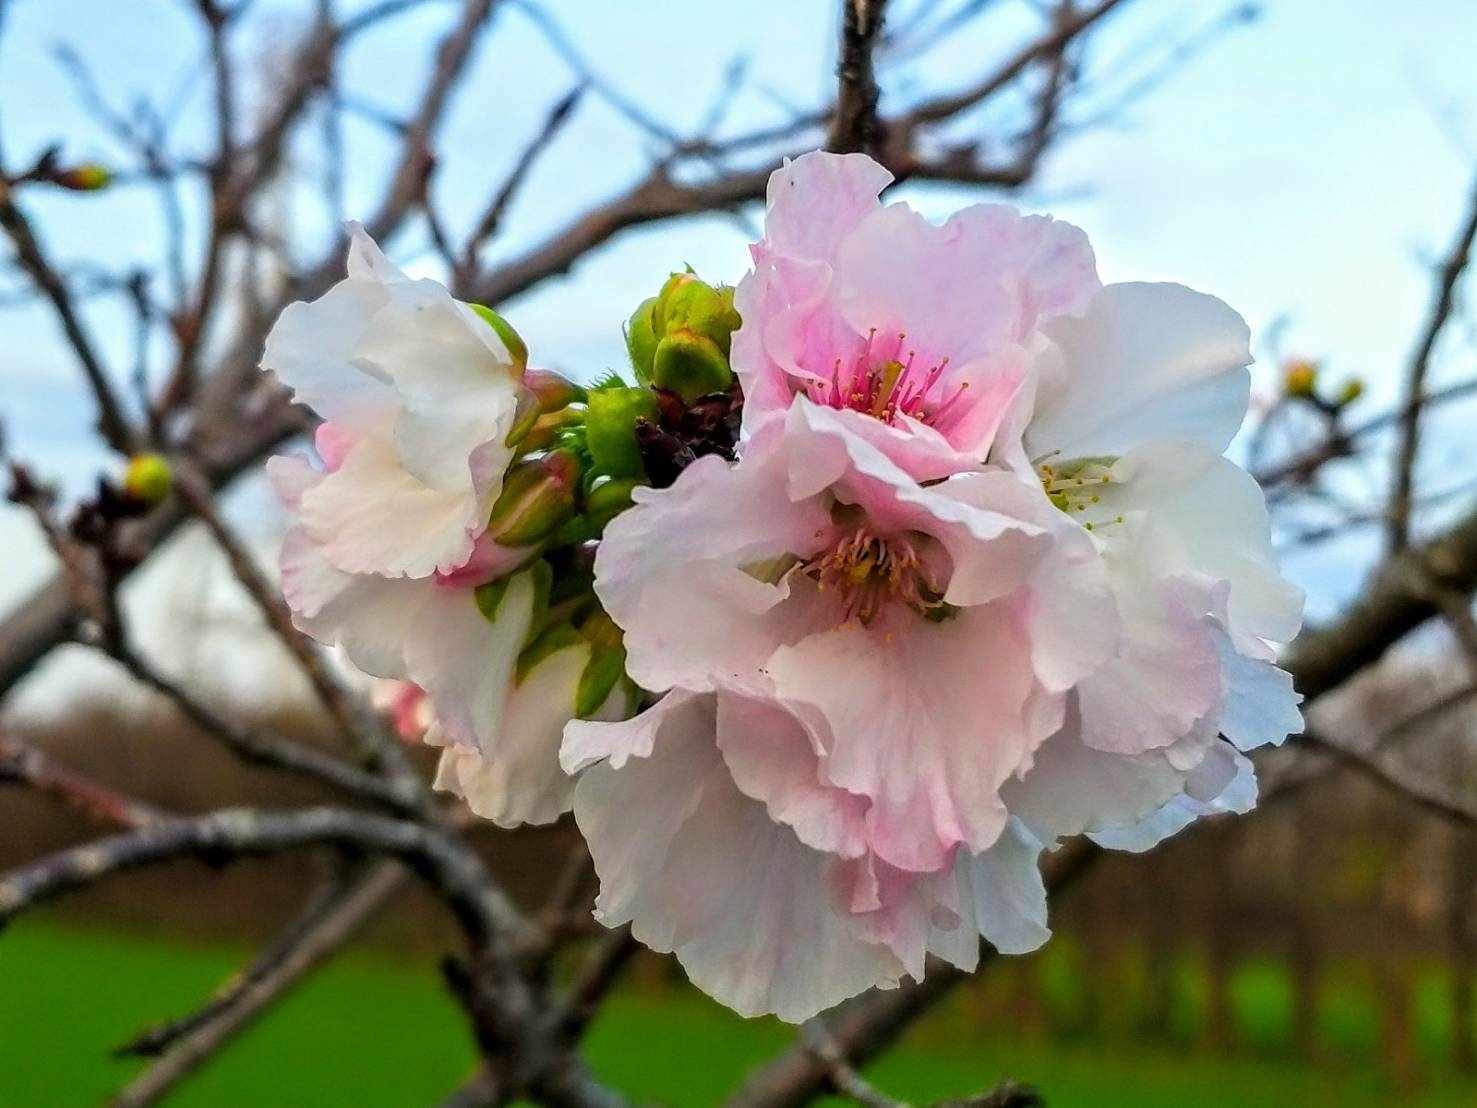 春分過了.百花盛開 來一趟羅莊櫻花歩道巡禮吧